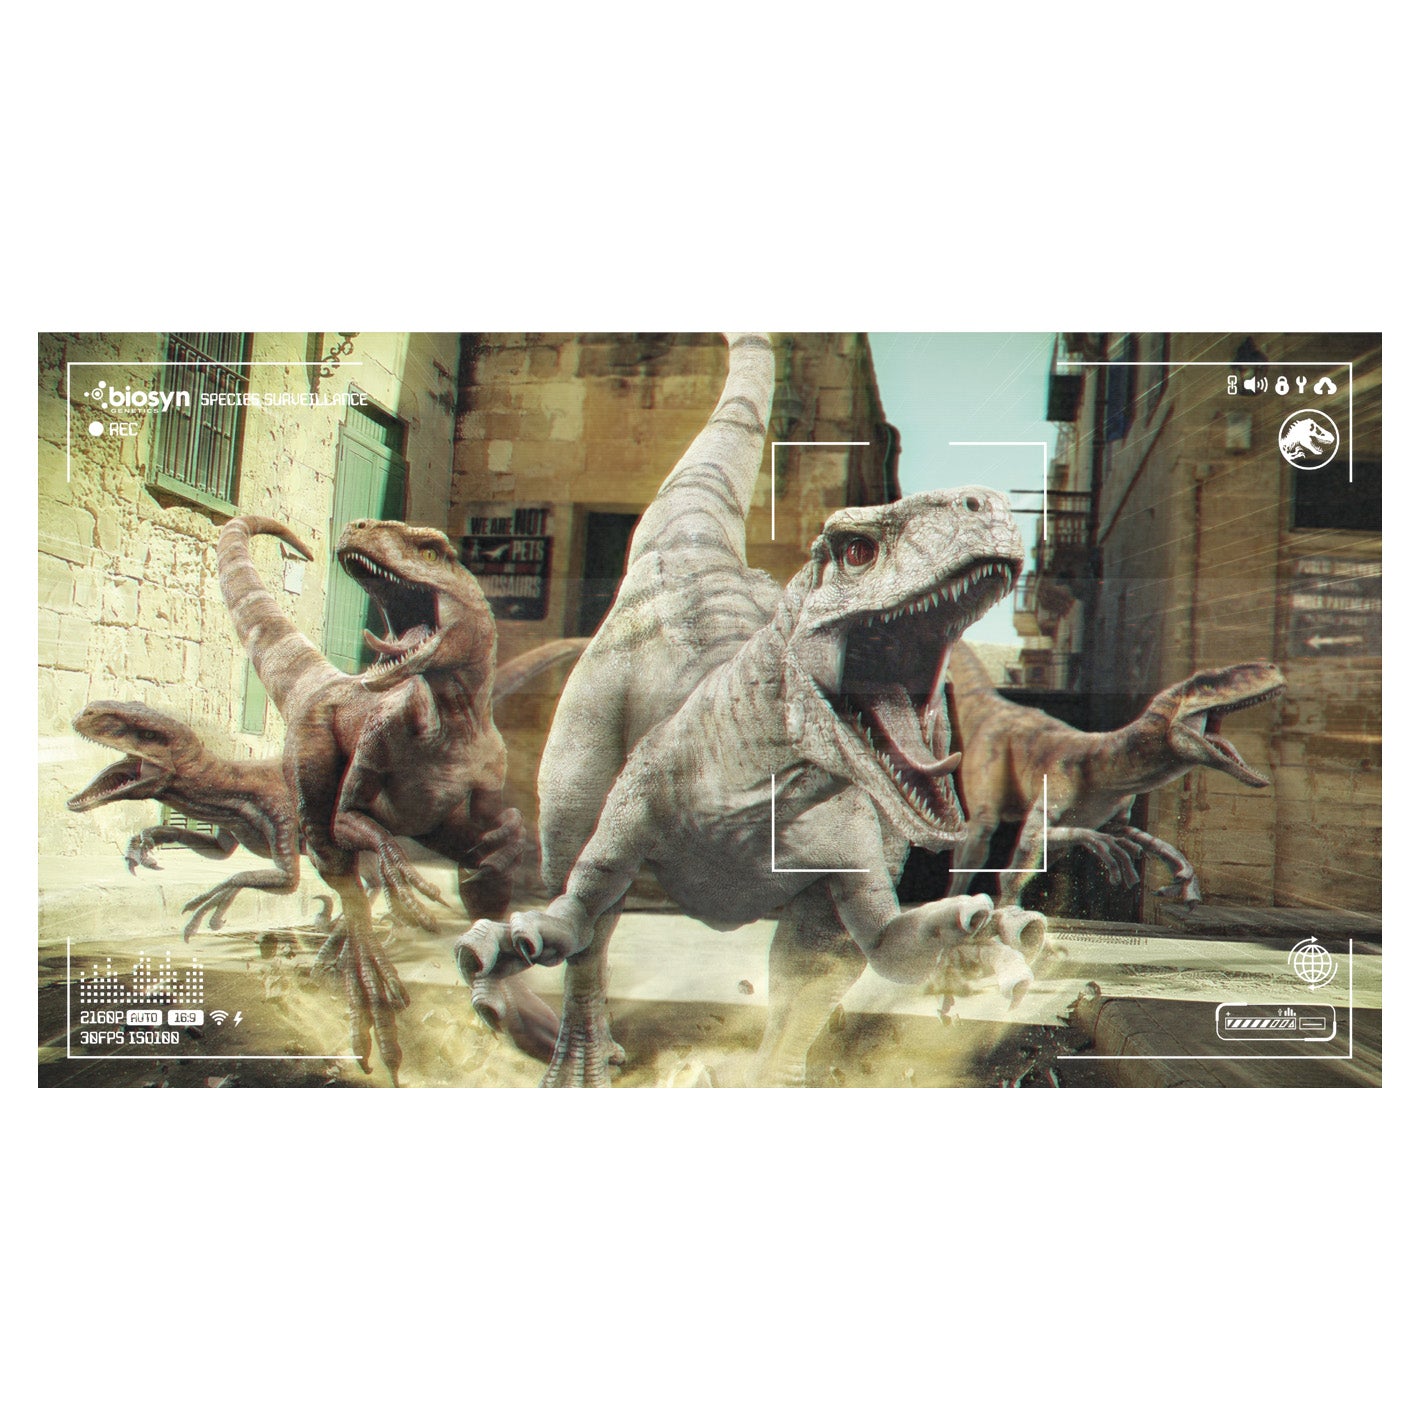 Officially Fathead World Jurassic – Dominion: Poster - Survaillance Atrociraptor